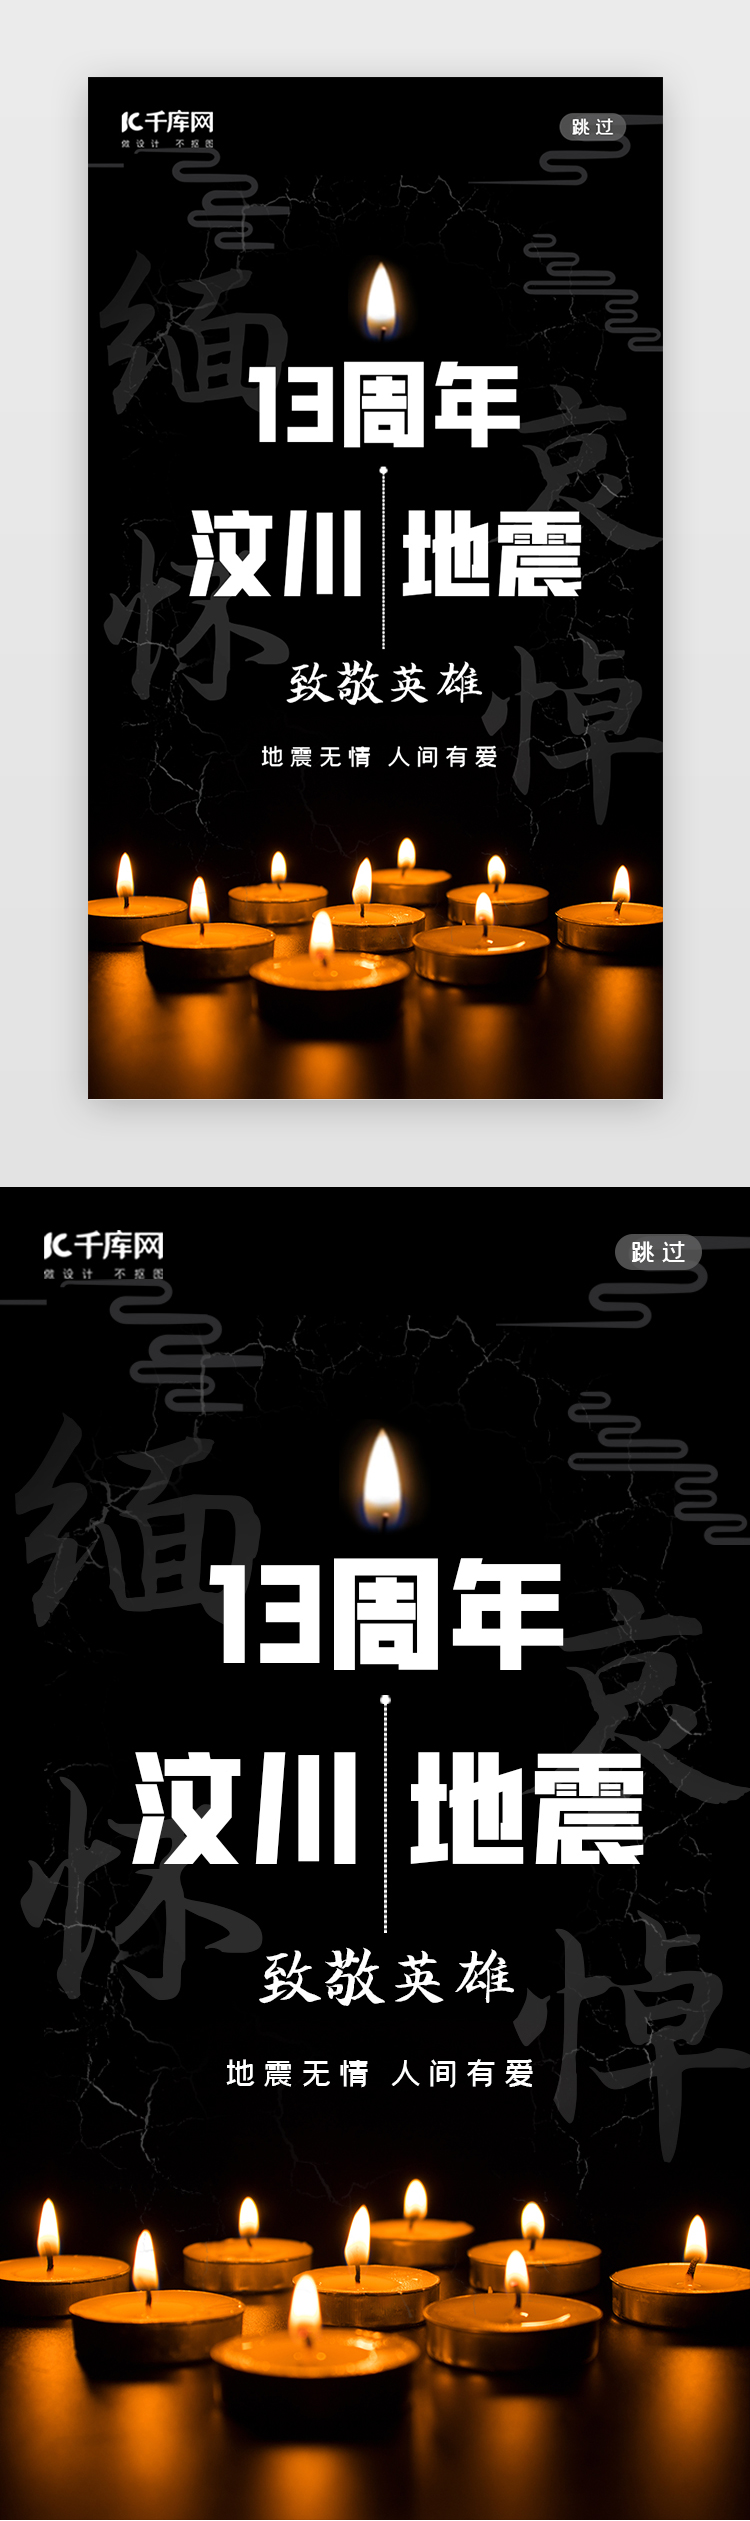 汶川地震闪屏中国风黑色蜡烛图片